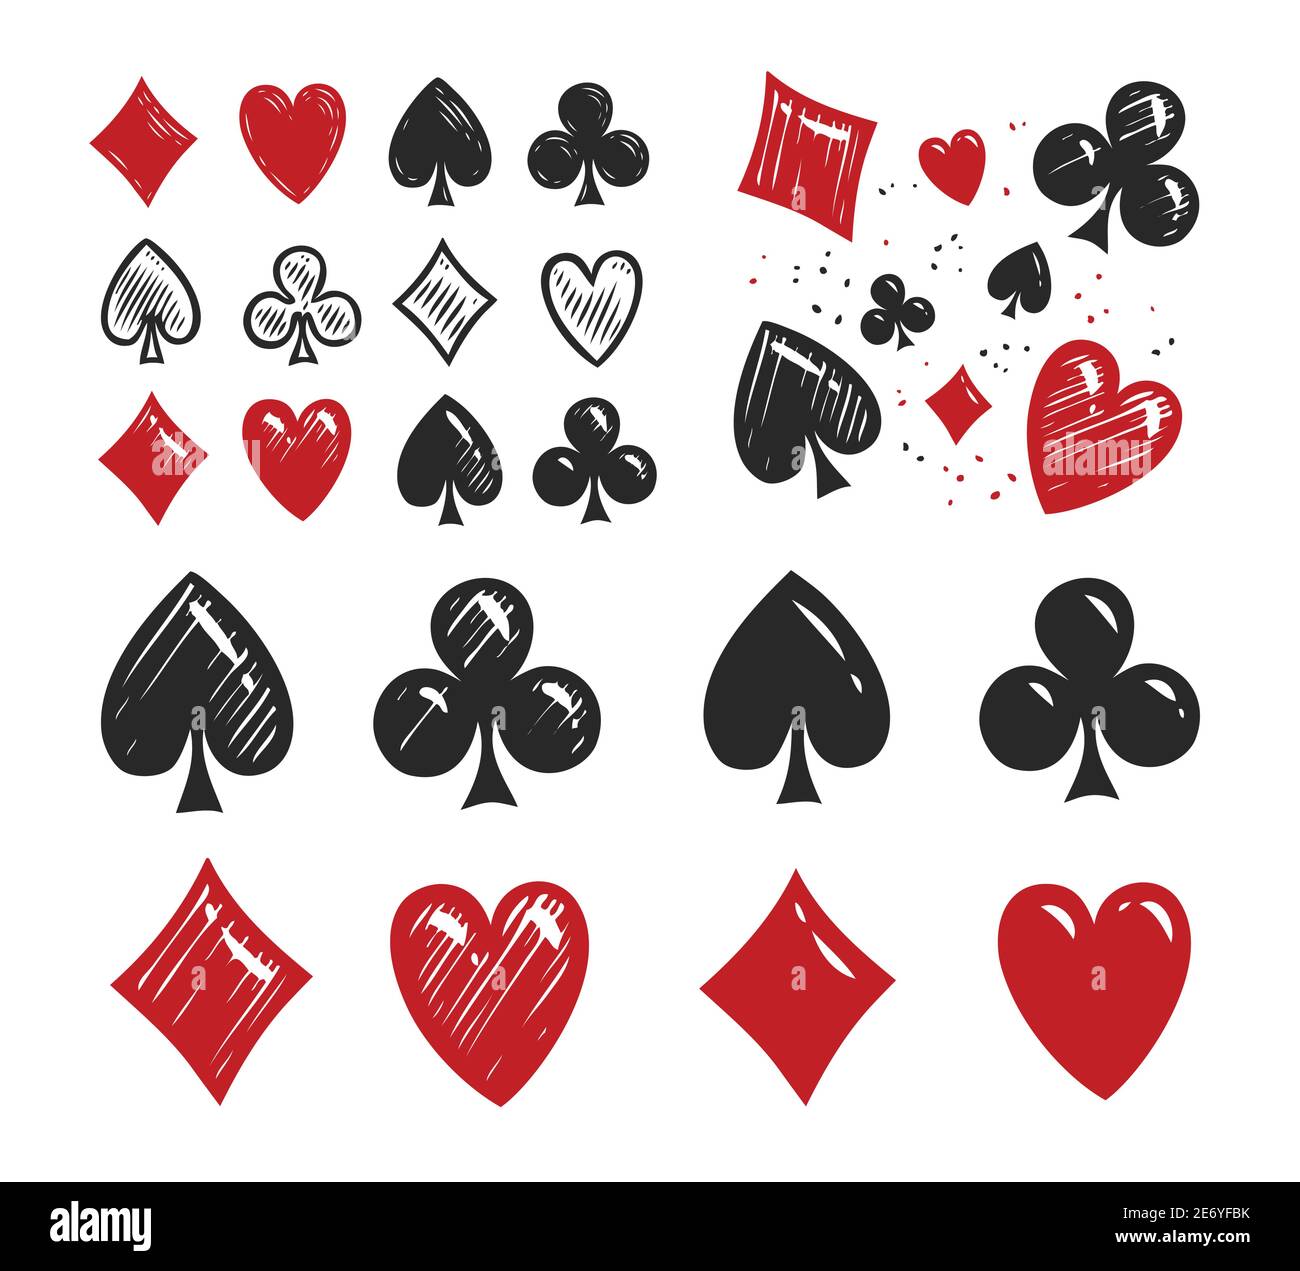 Símbolos Dispersos Juegos de Casino